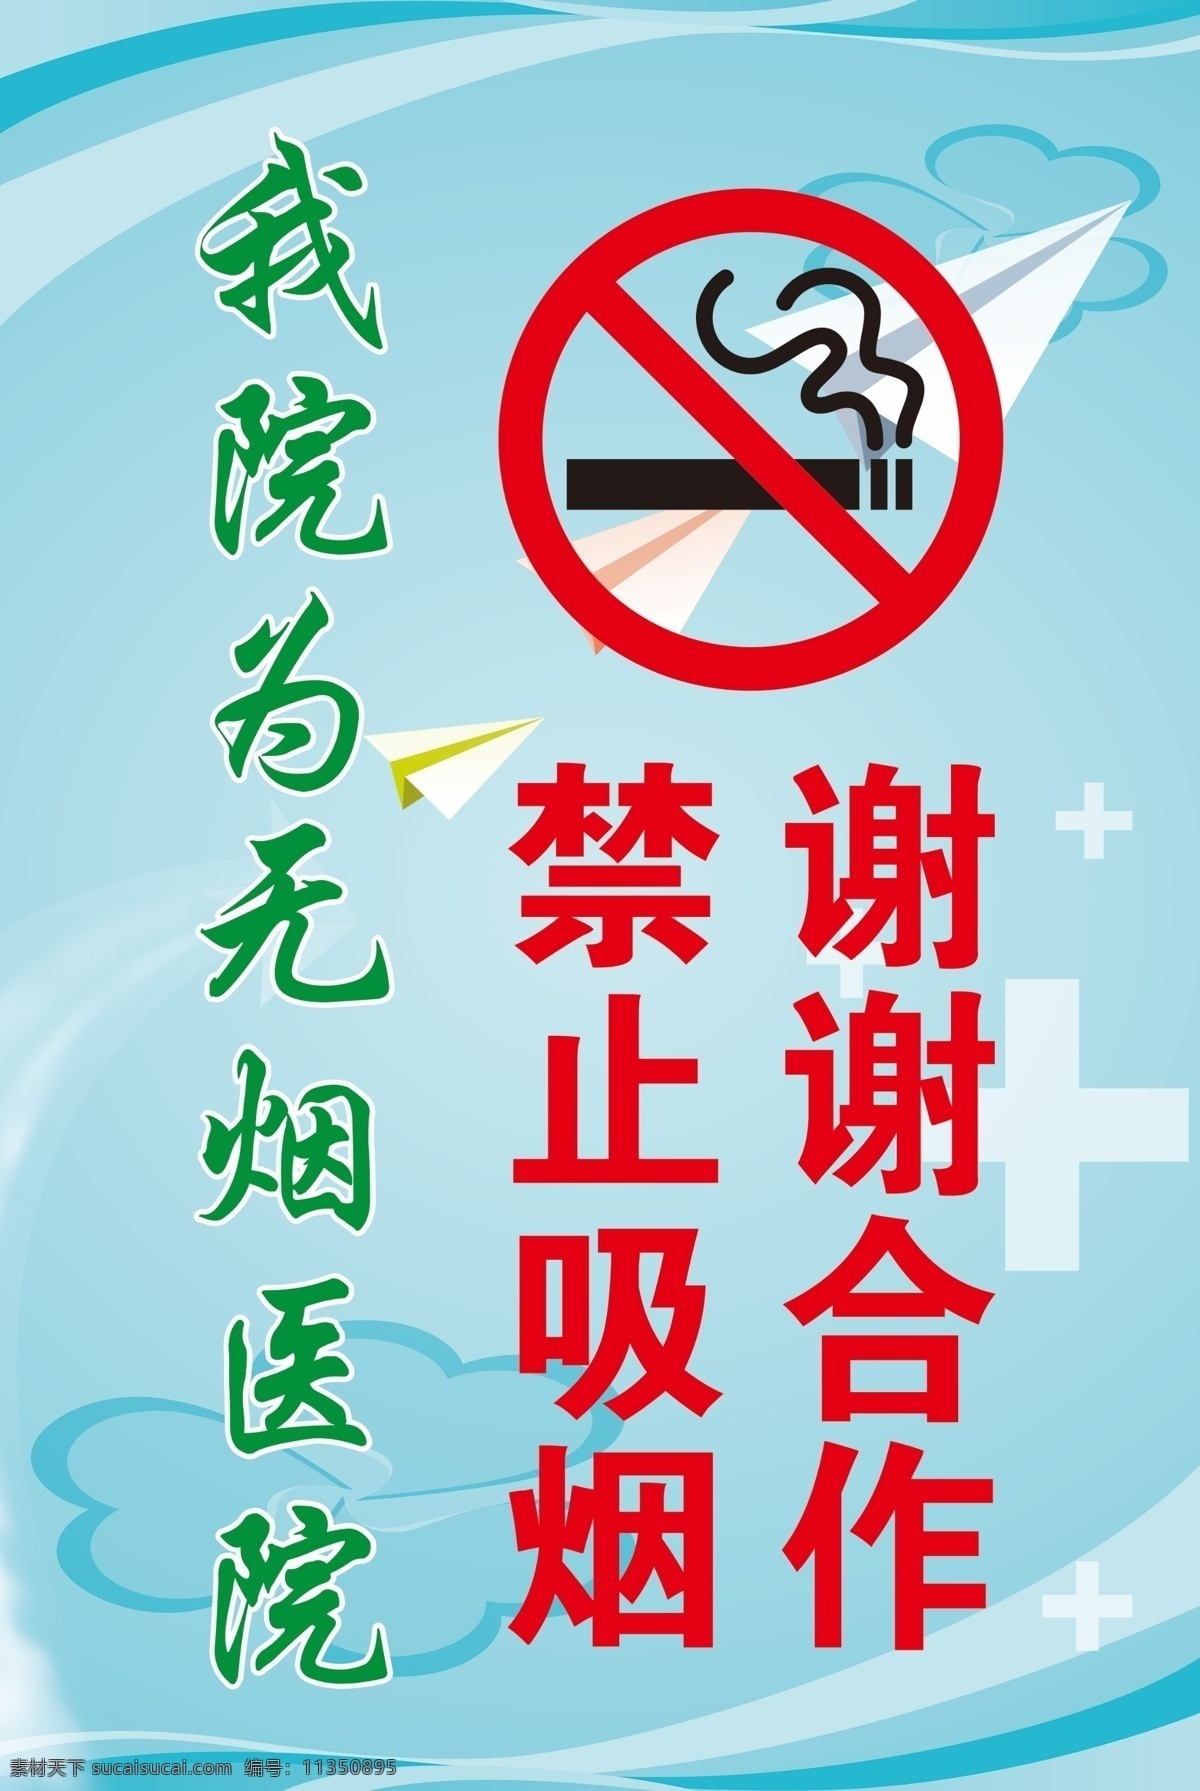 无烟医院展牌 无烟医院 禁止吸烟 展牌 宣传画 背景 蓝色背景 足疗养生保健